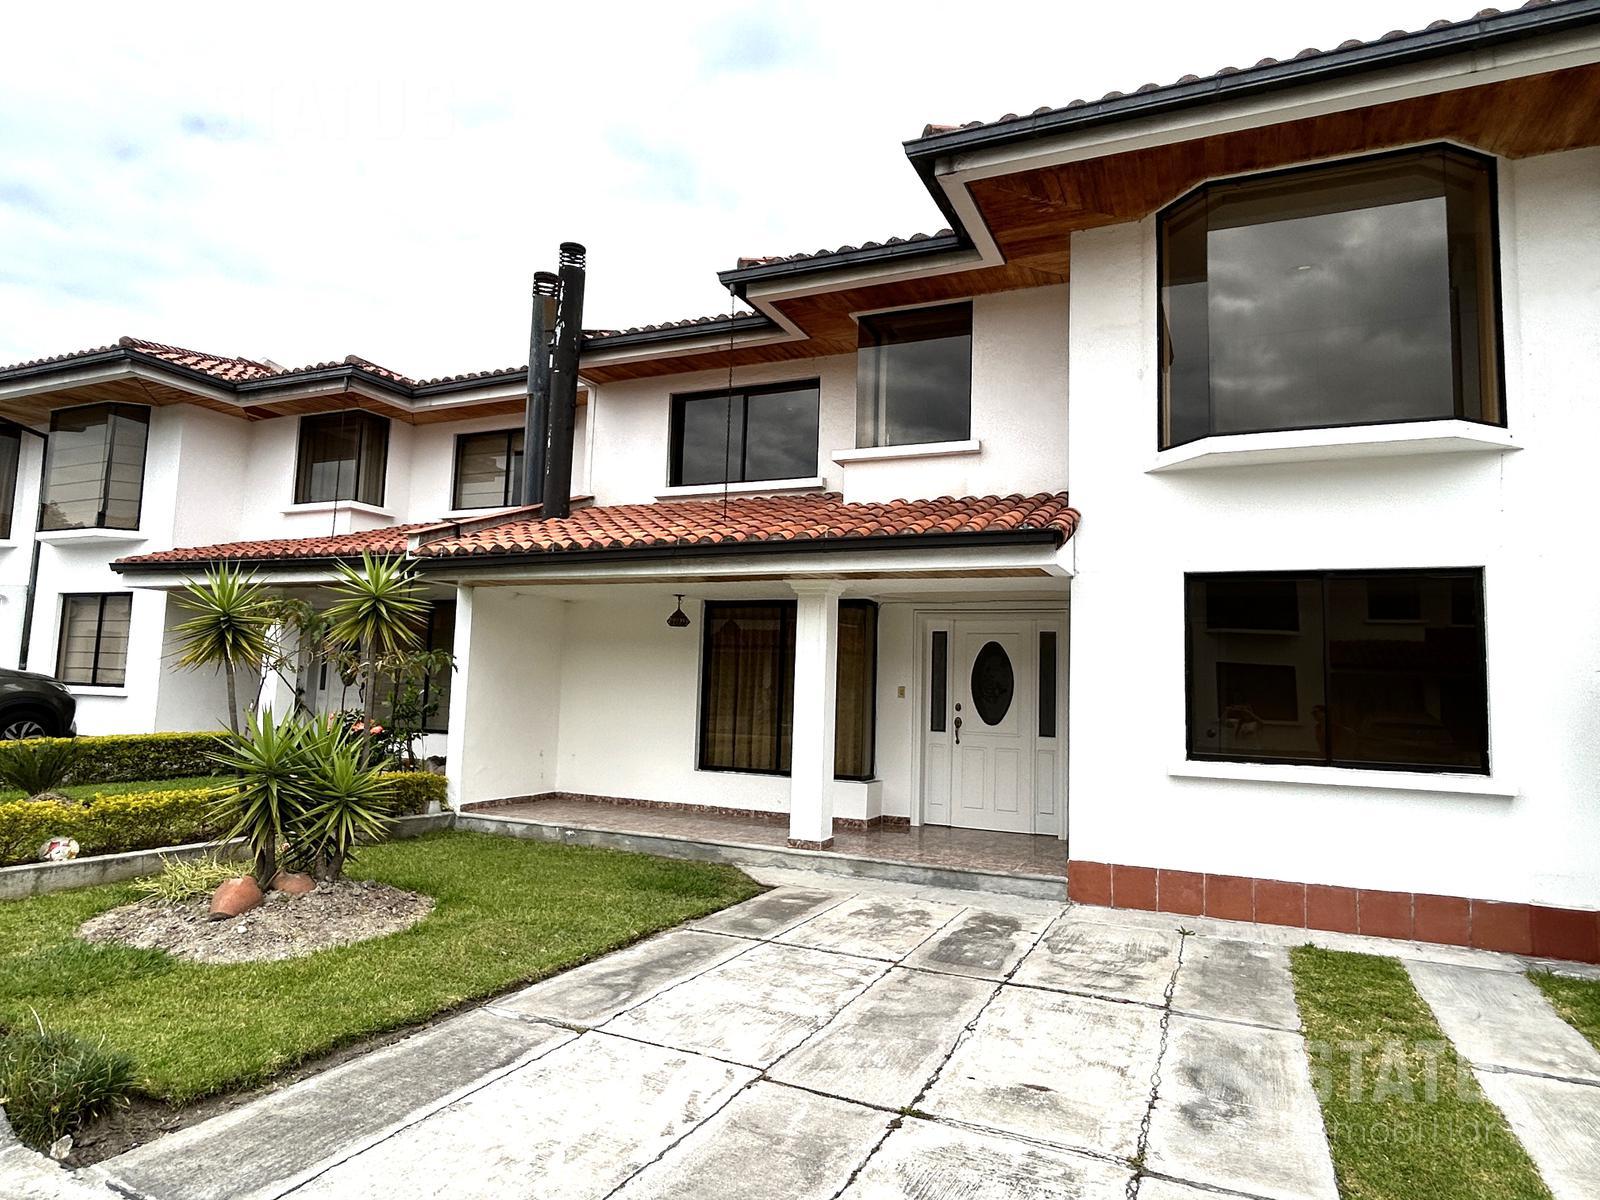 ¡De oportunidad! Vendo casa en conjunto, sector Mirasierra 3 Dorm., 2 garajes, $91.900